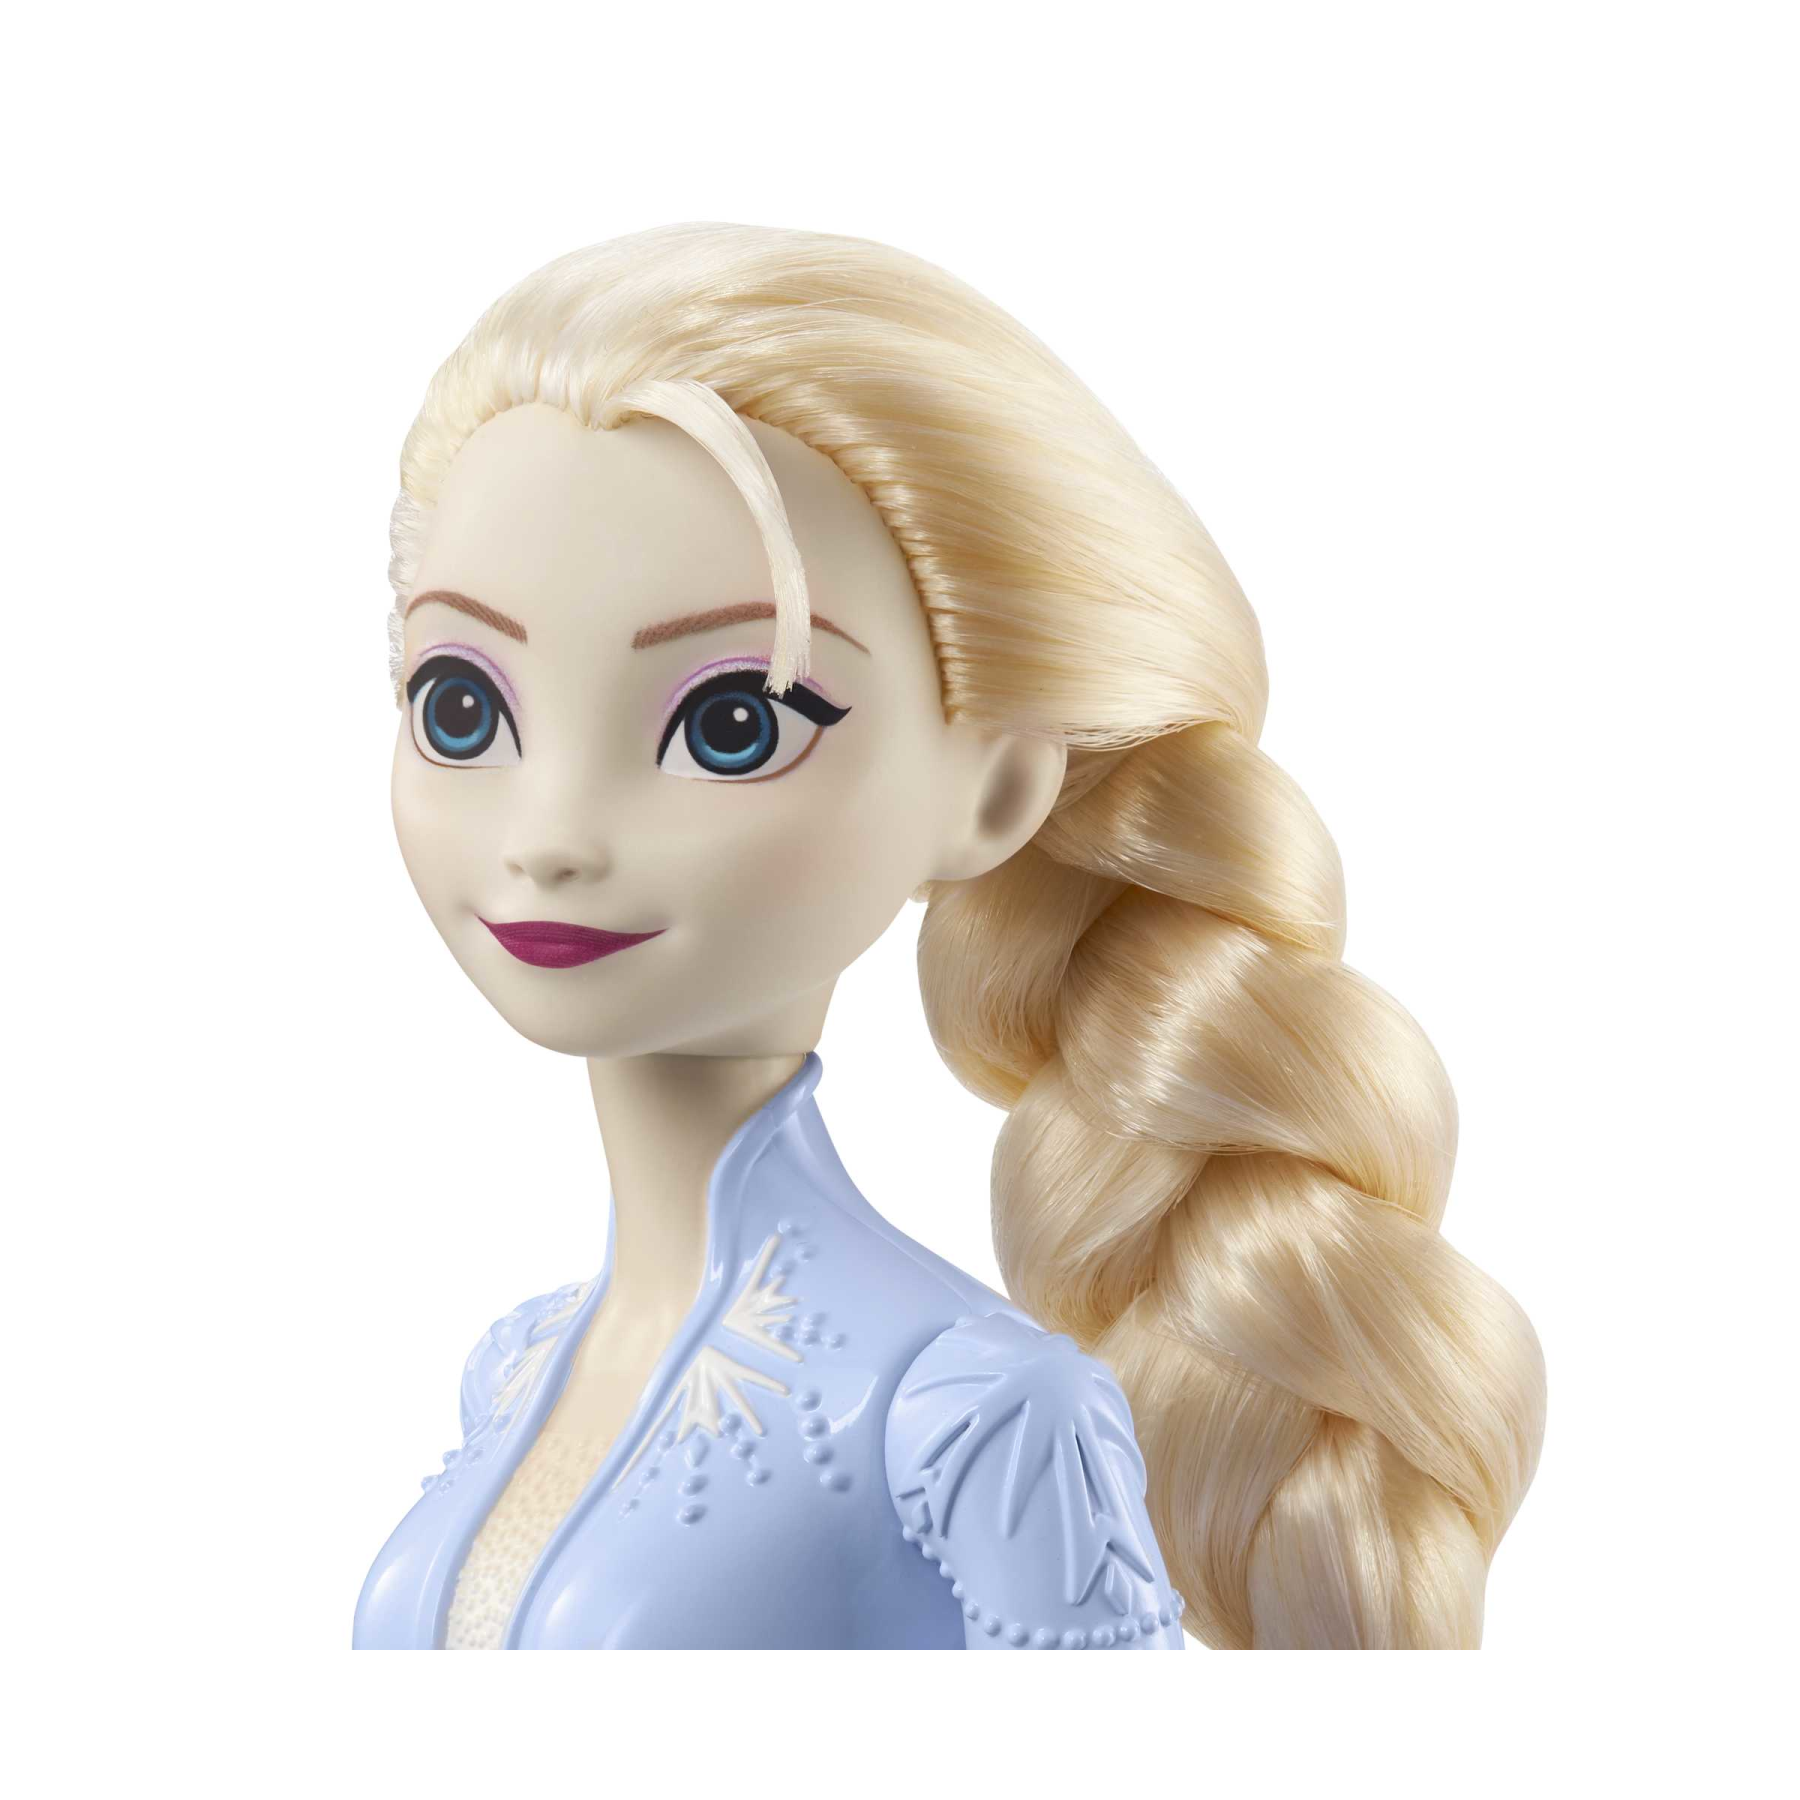 Disney frozen - elsa bambola con abito esclusivo e accessori ispirati ai  film disney frozen 2, giocattolo per bambini, 3+ anni, hlw48 - Toys Center